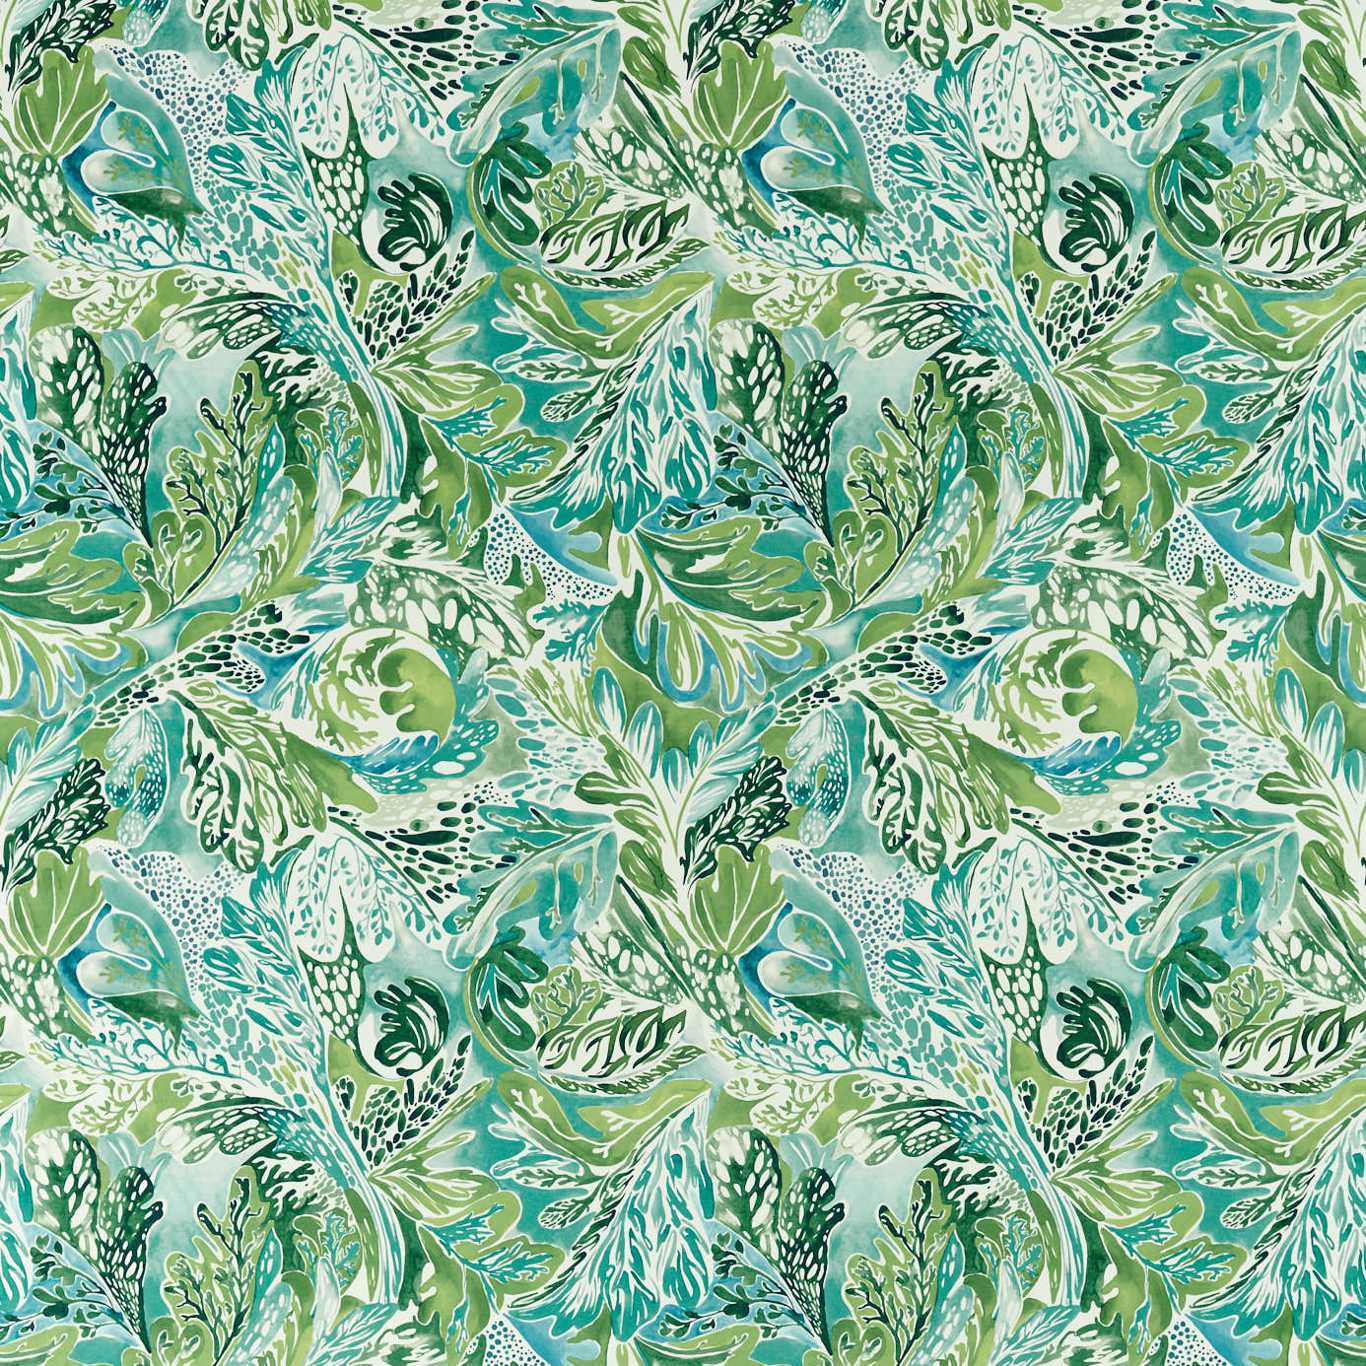 Alotau Fig Leaf/ Tree Canopy Fabric by HAR